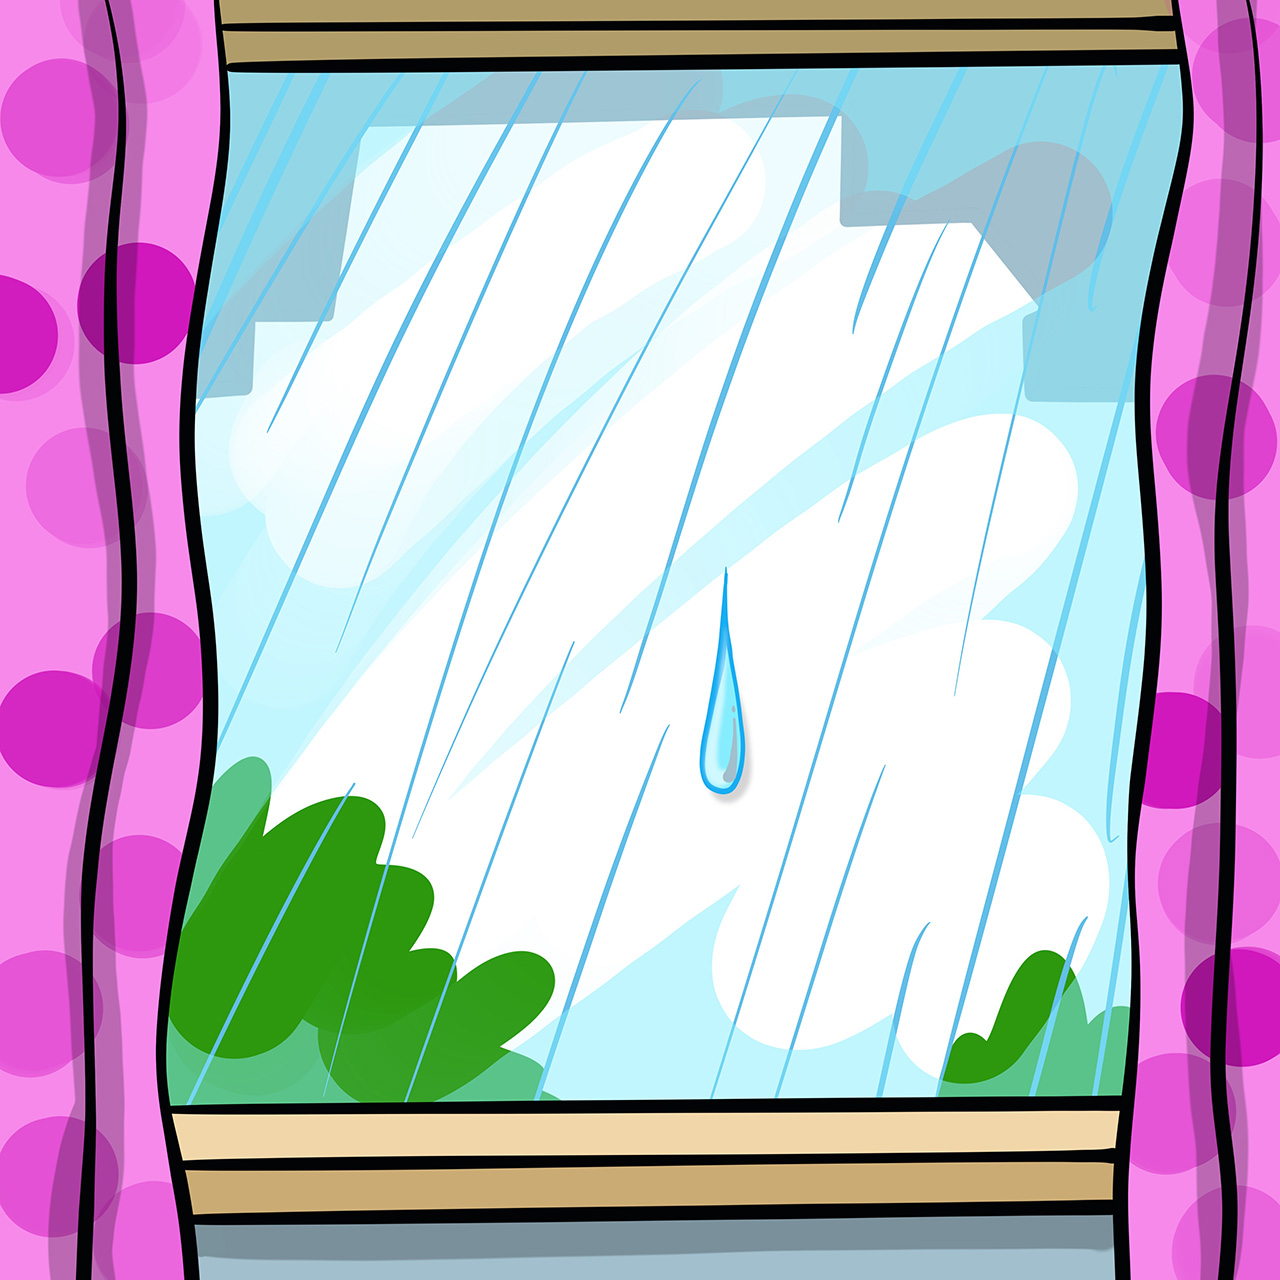 Pada kiša te po prozorskom staklu klizi jedna kapljica. 